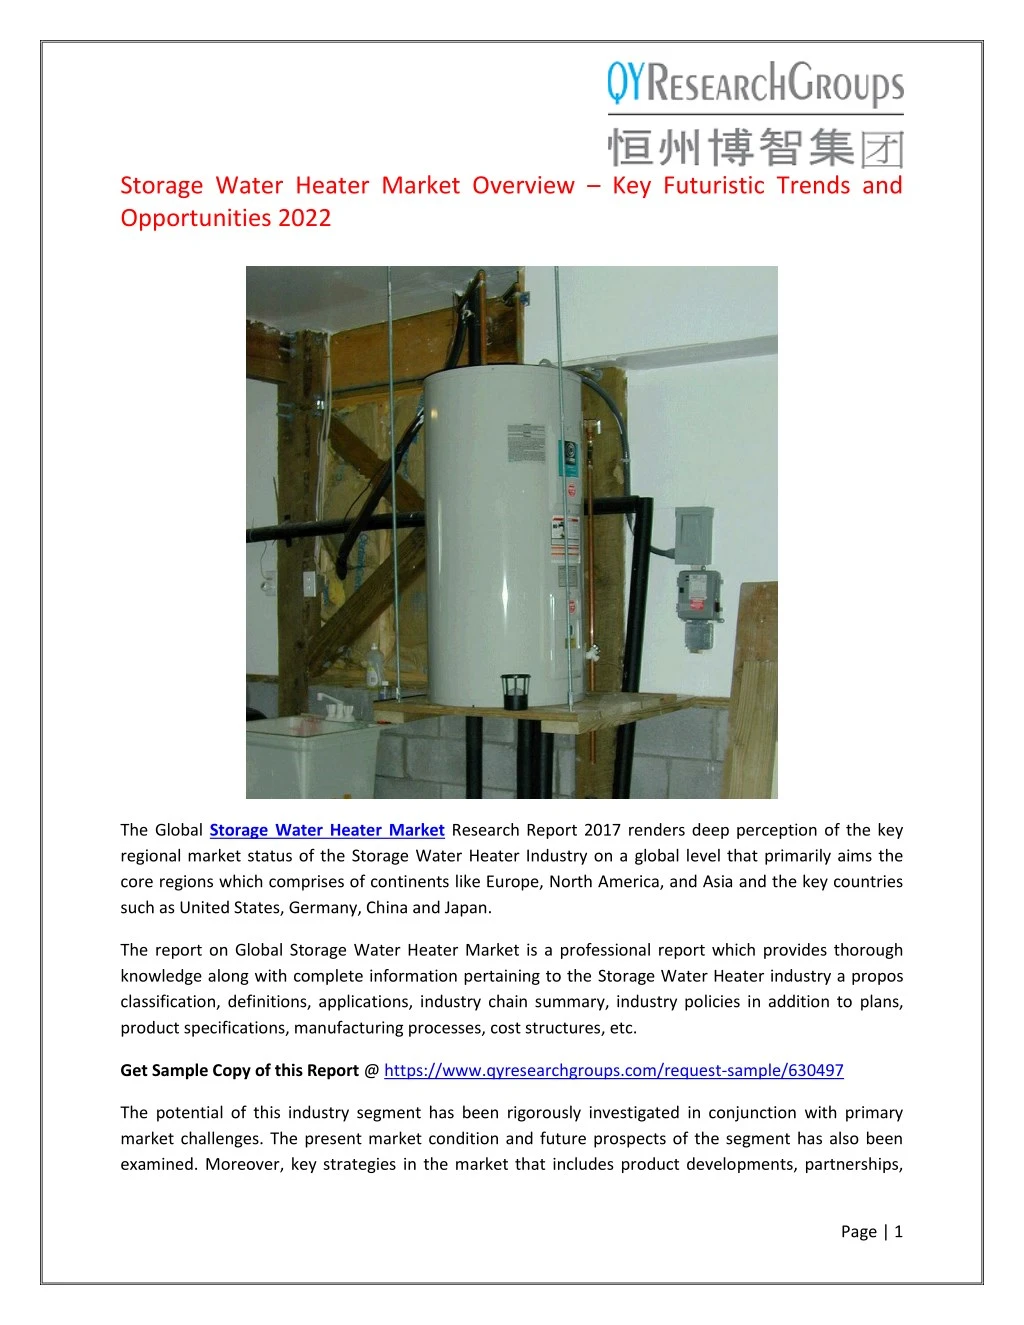 storage water heater market overview